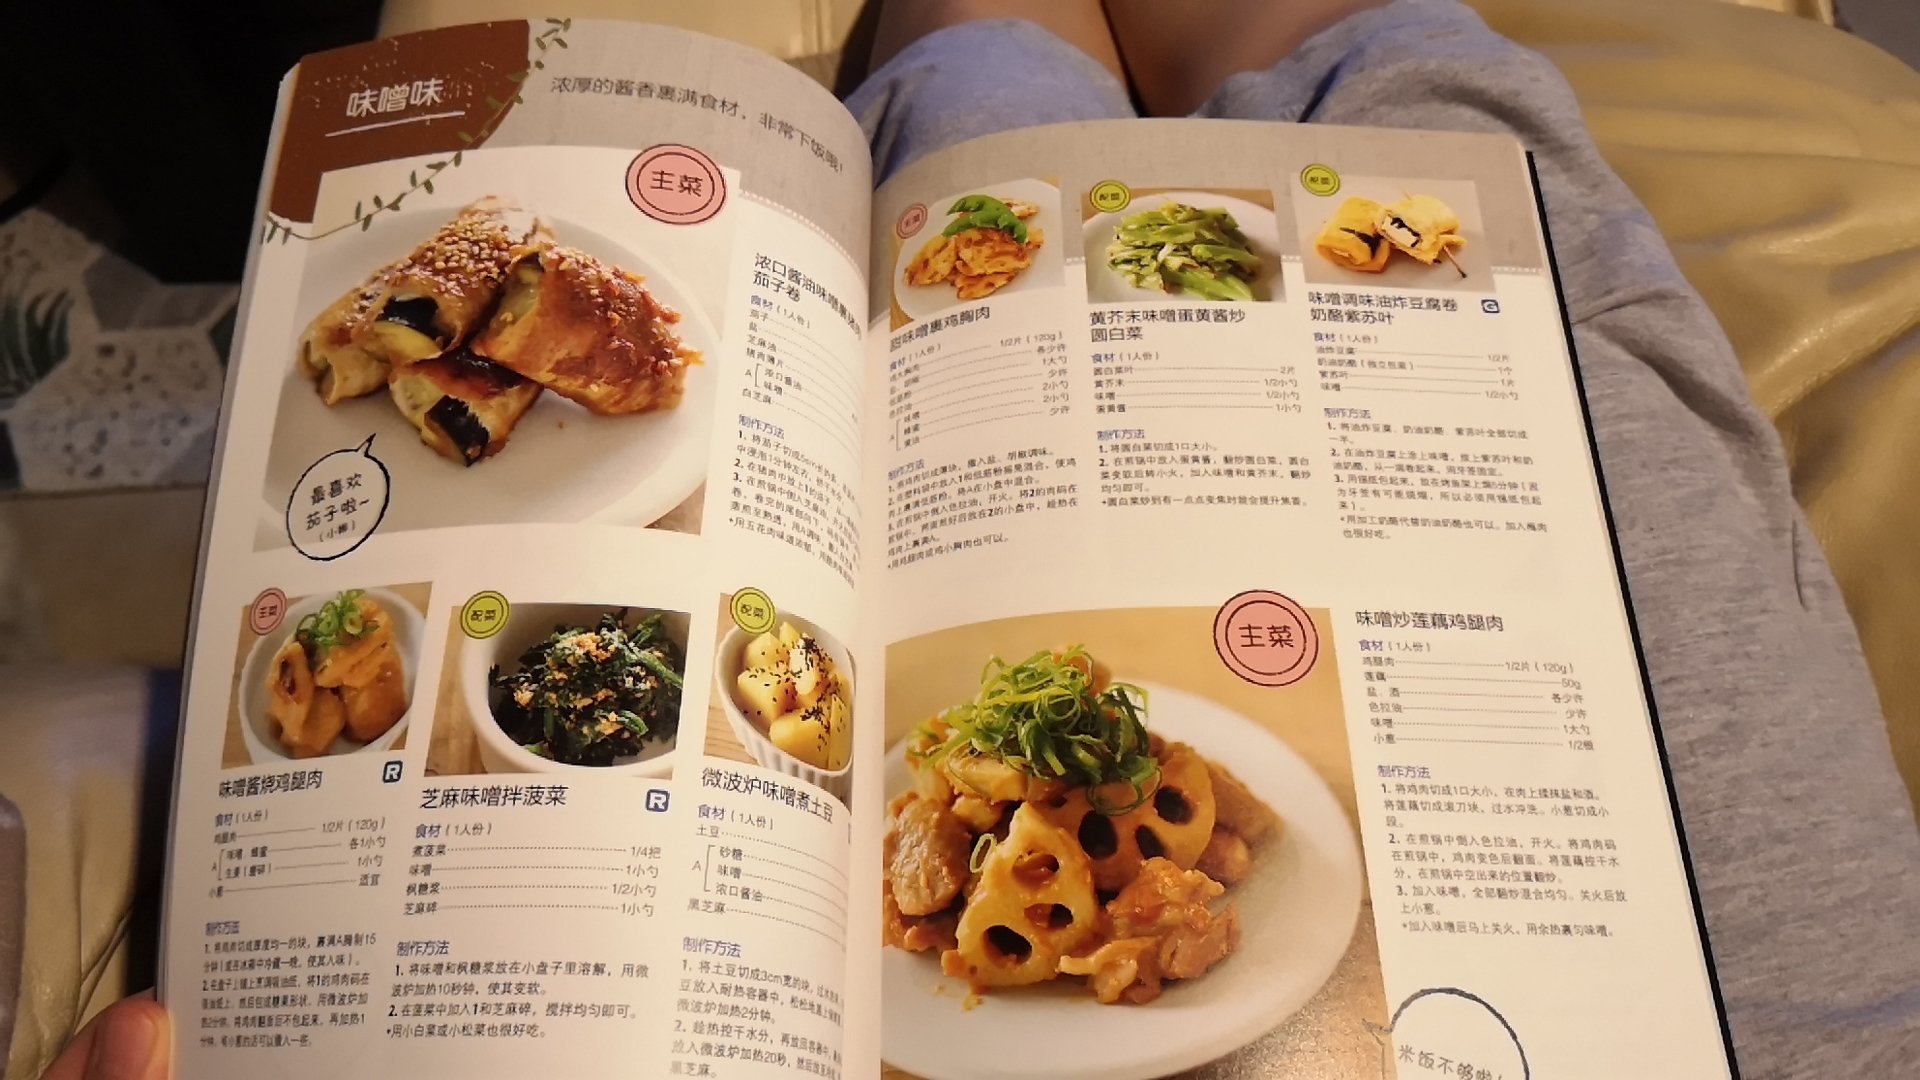 菜品制作很详尽，但很多食材调料都是日本的，这里很难买到，不太推荐。